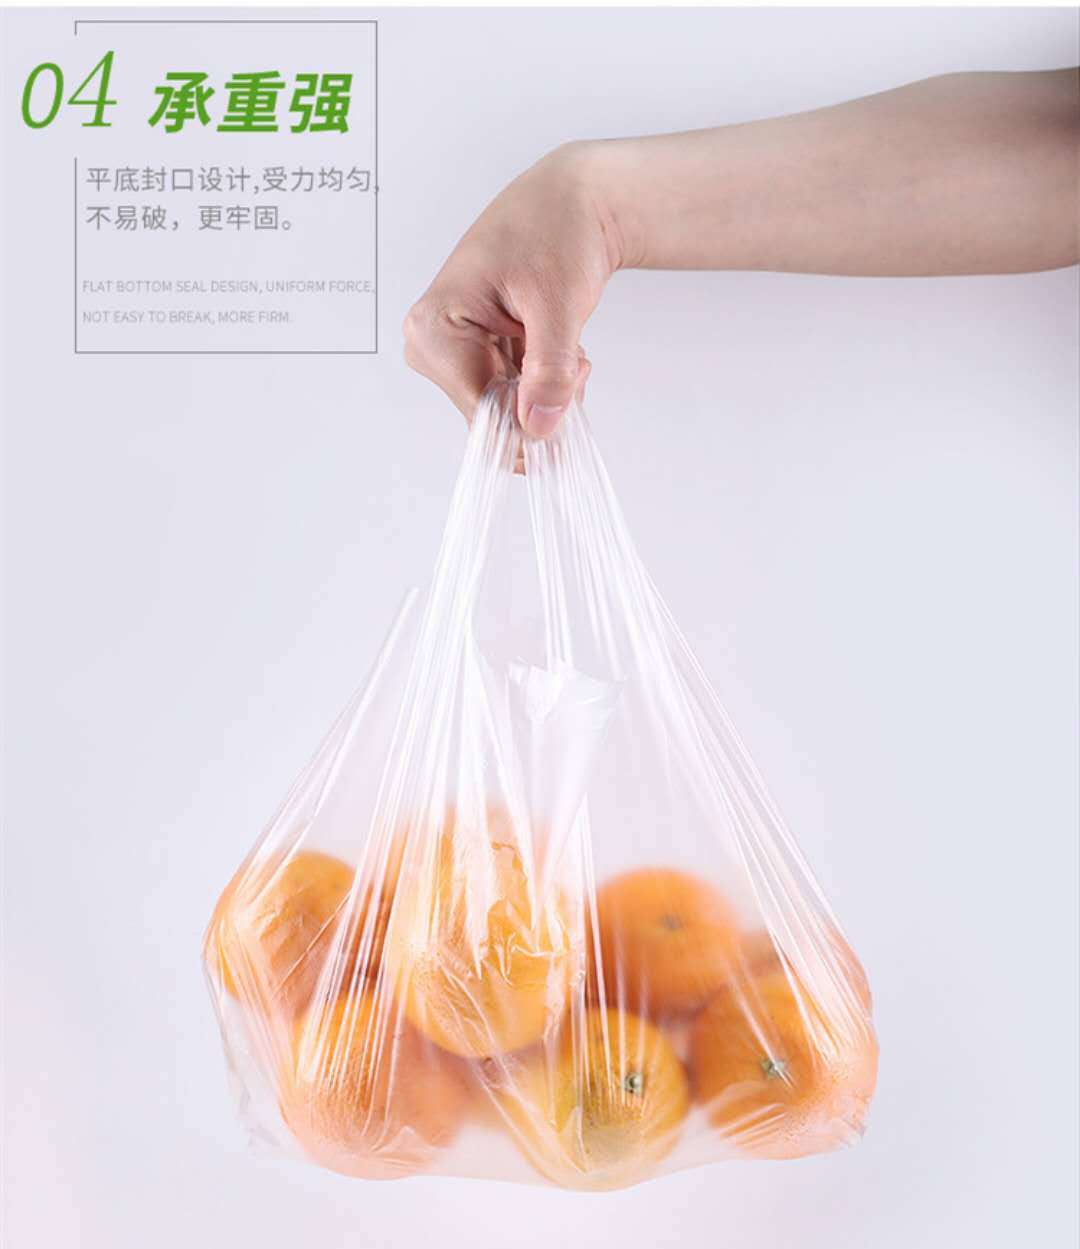 手提塑料袋批发白色食品打包方便胶袋超市购物外卖一次性透明袋子